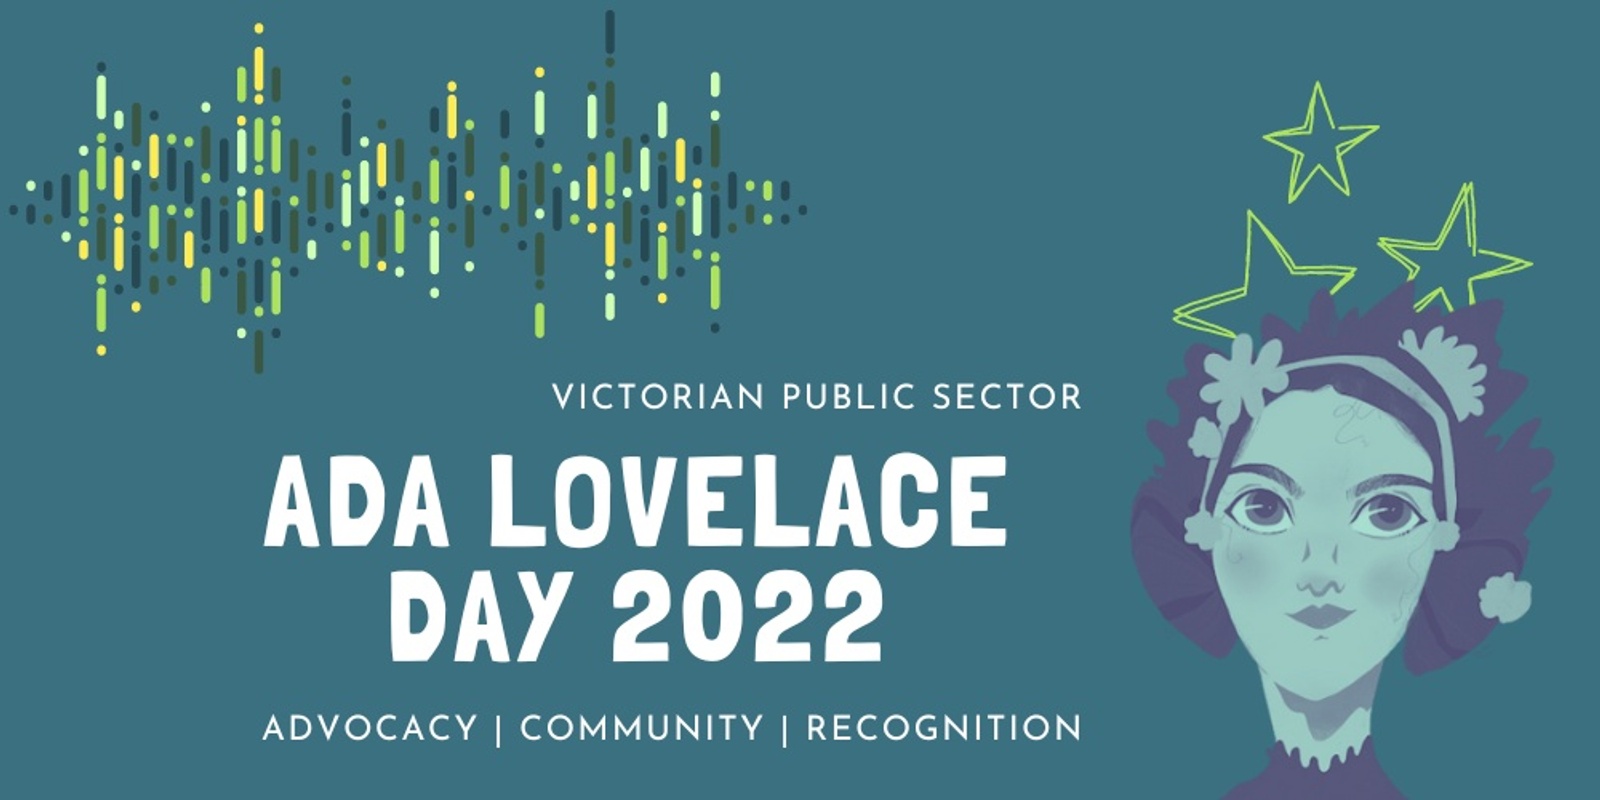 Banner image for VPS Ada Lovelace Day 2022